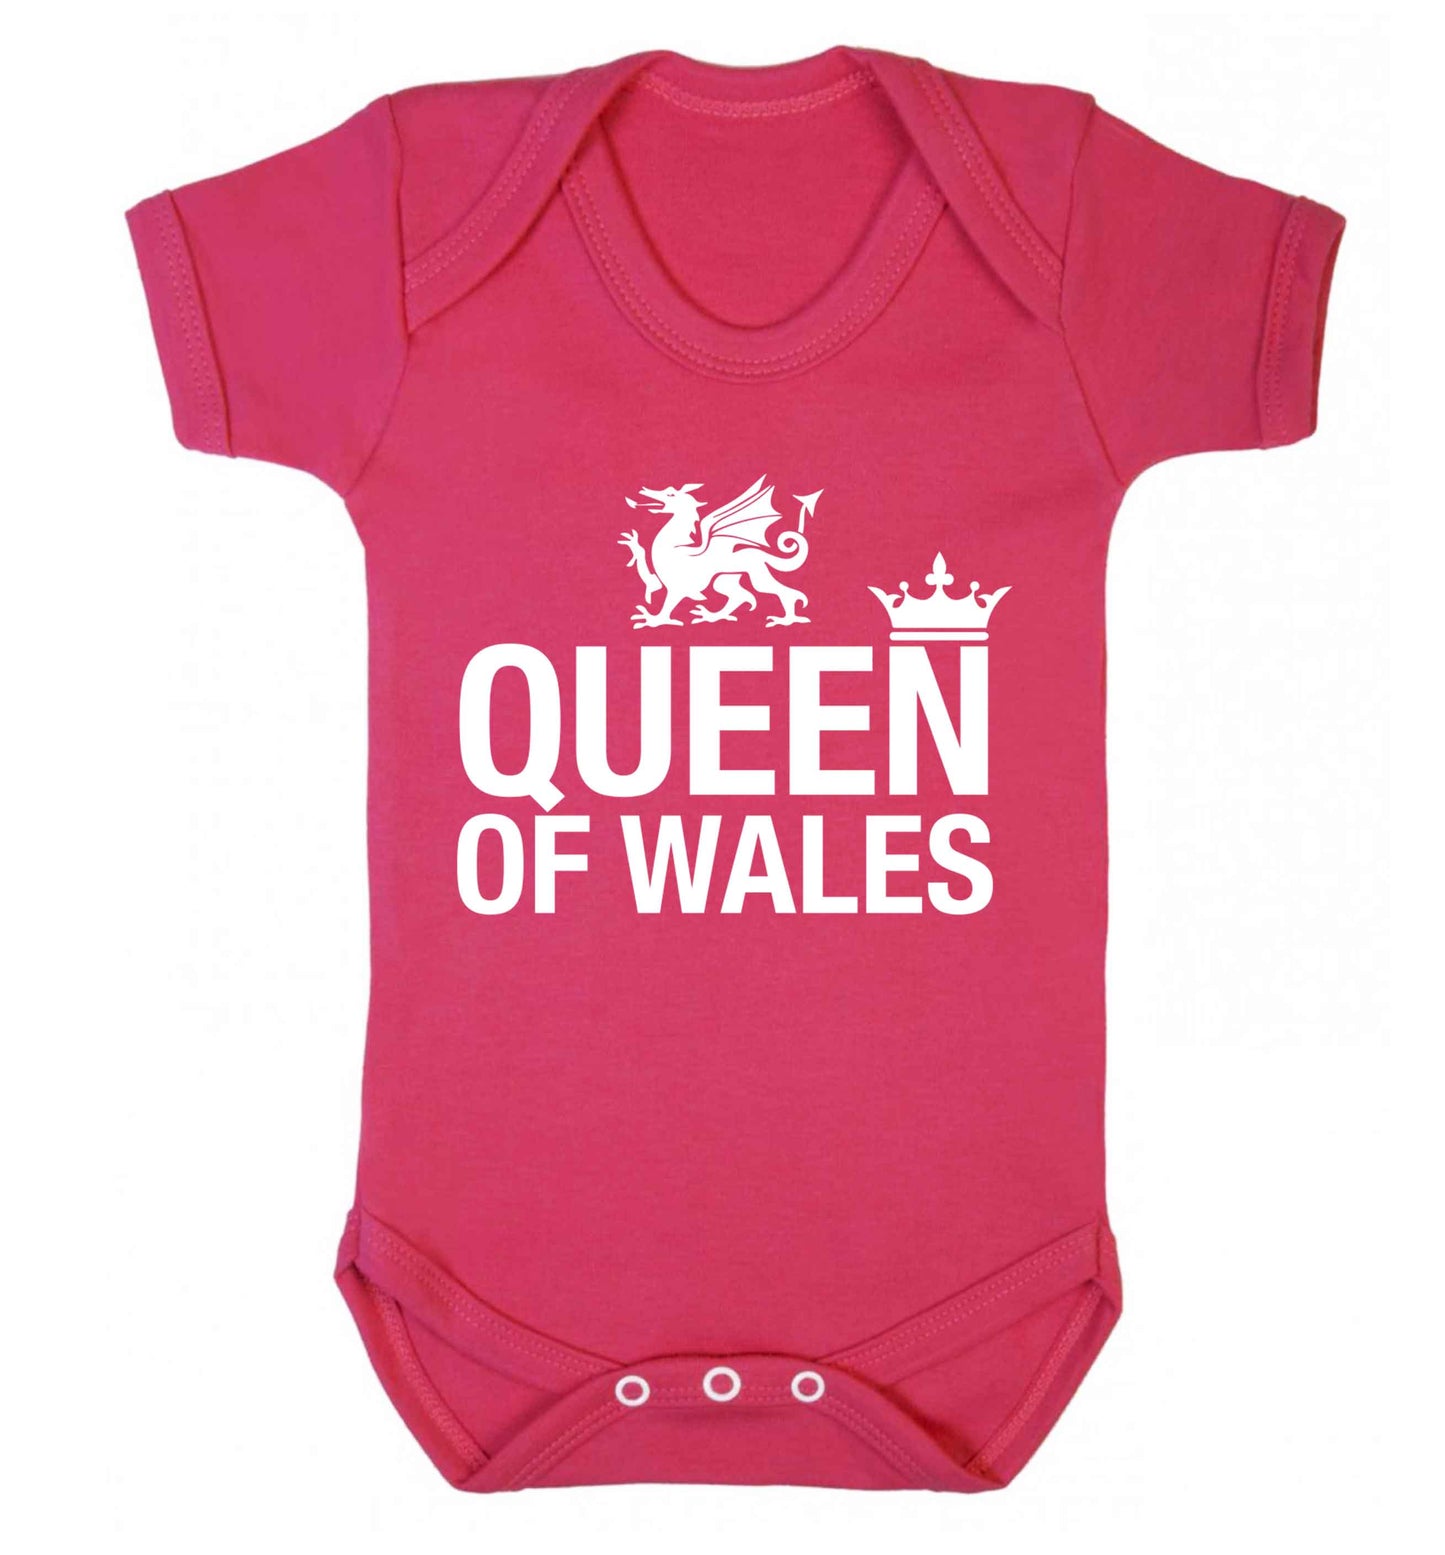 Queen of Wales Baby Vest dark pink 18-24 months